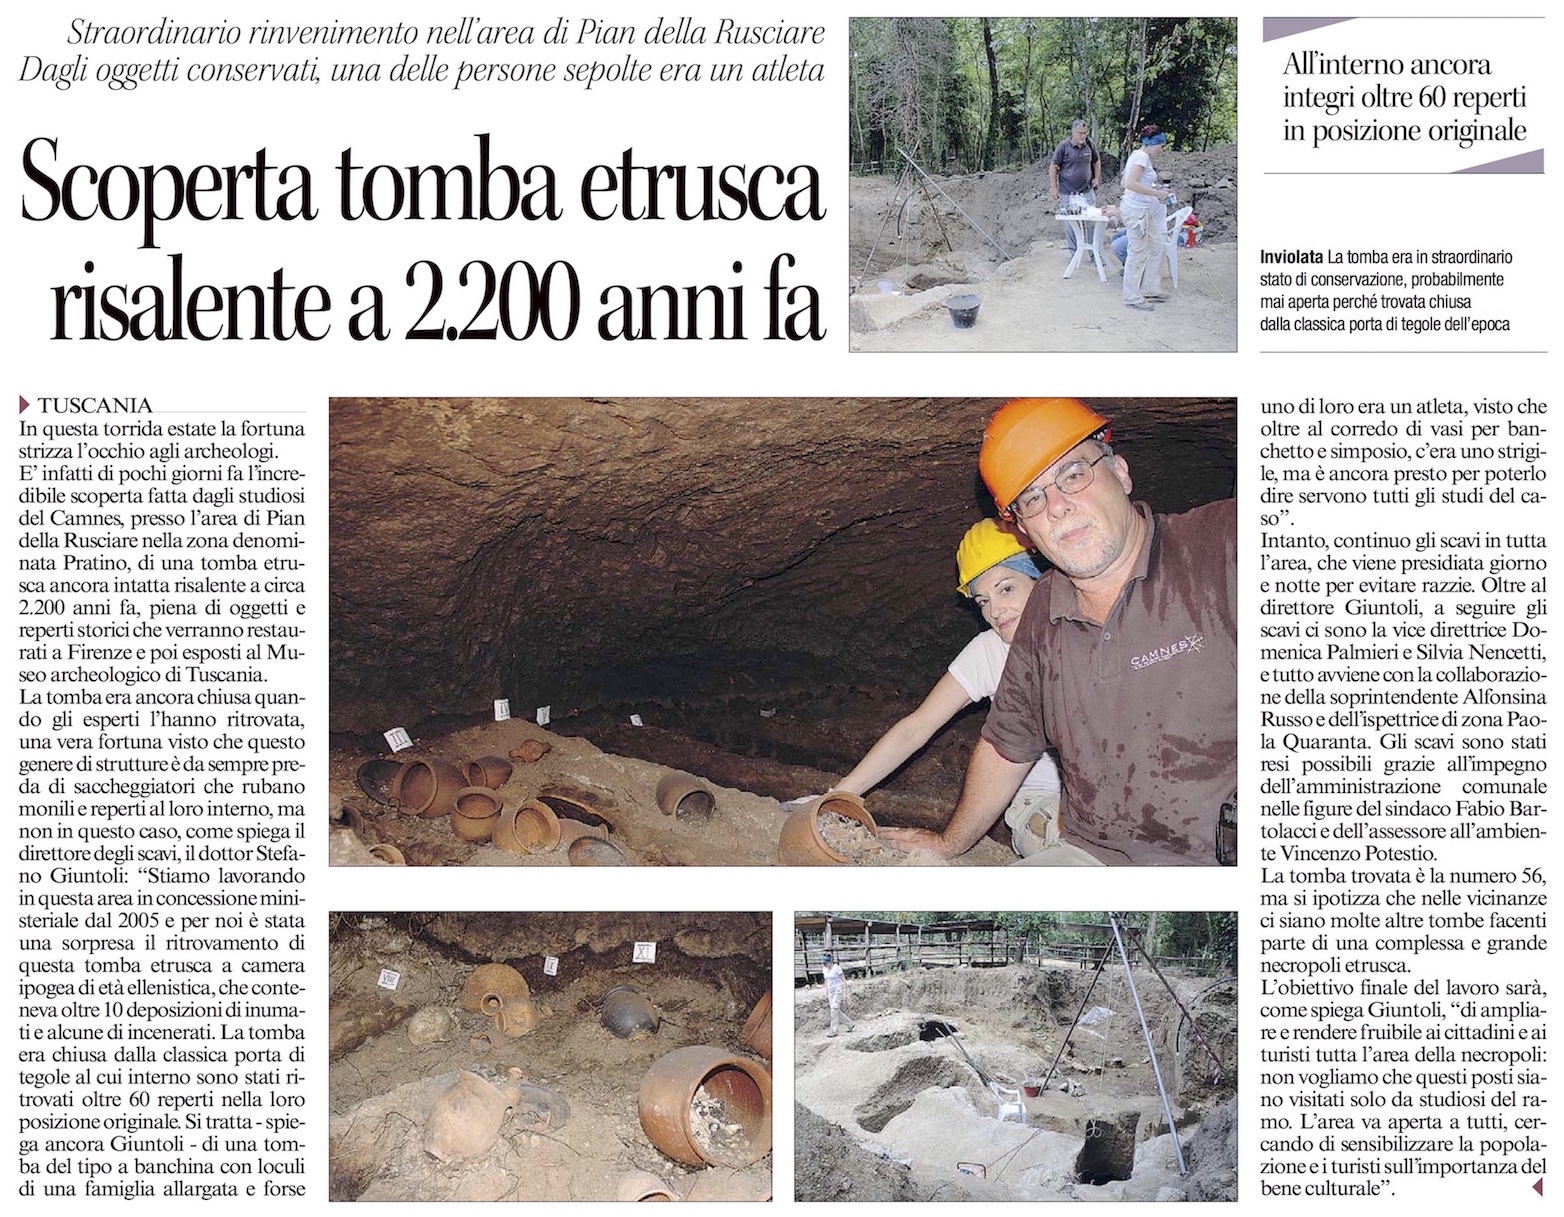 Scoperta tomba intatta a Tuscania